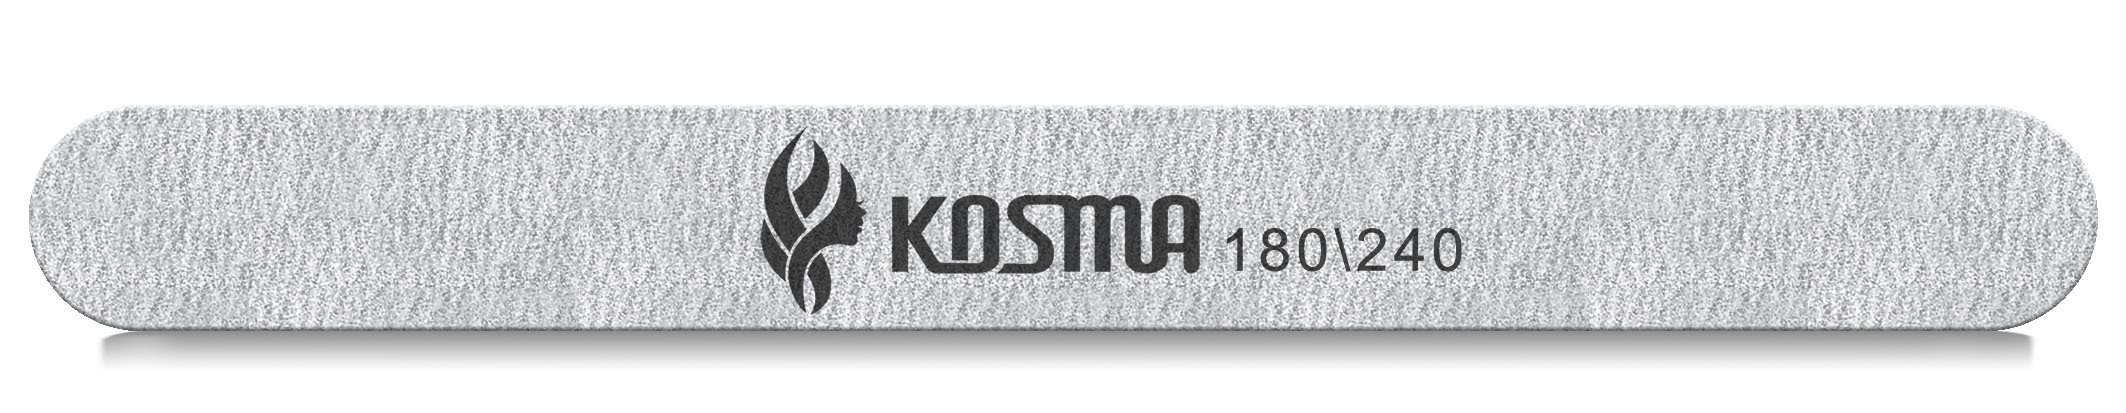 Купить Пилка KOSMA прямая большая серая 180/240 пластиковая основа 1 шт.